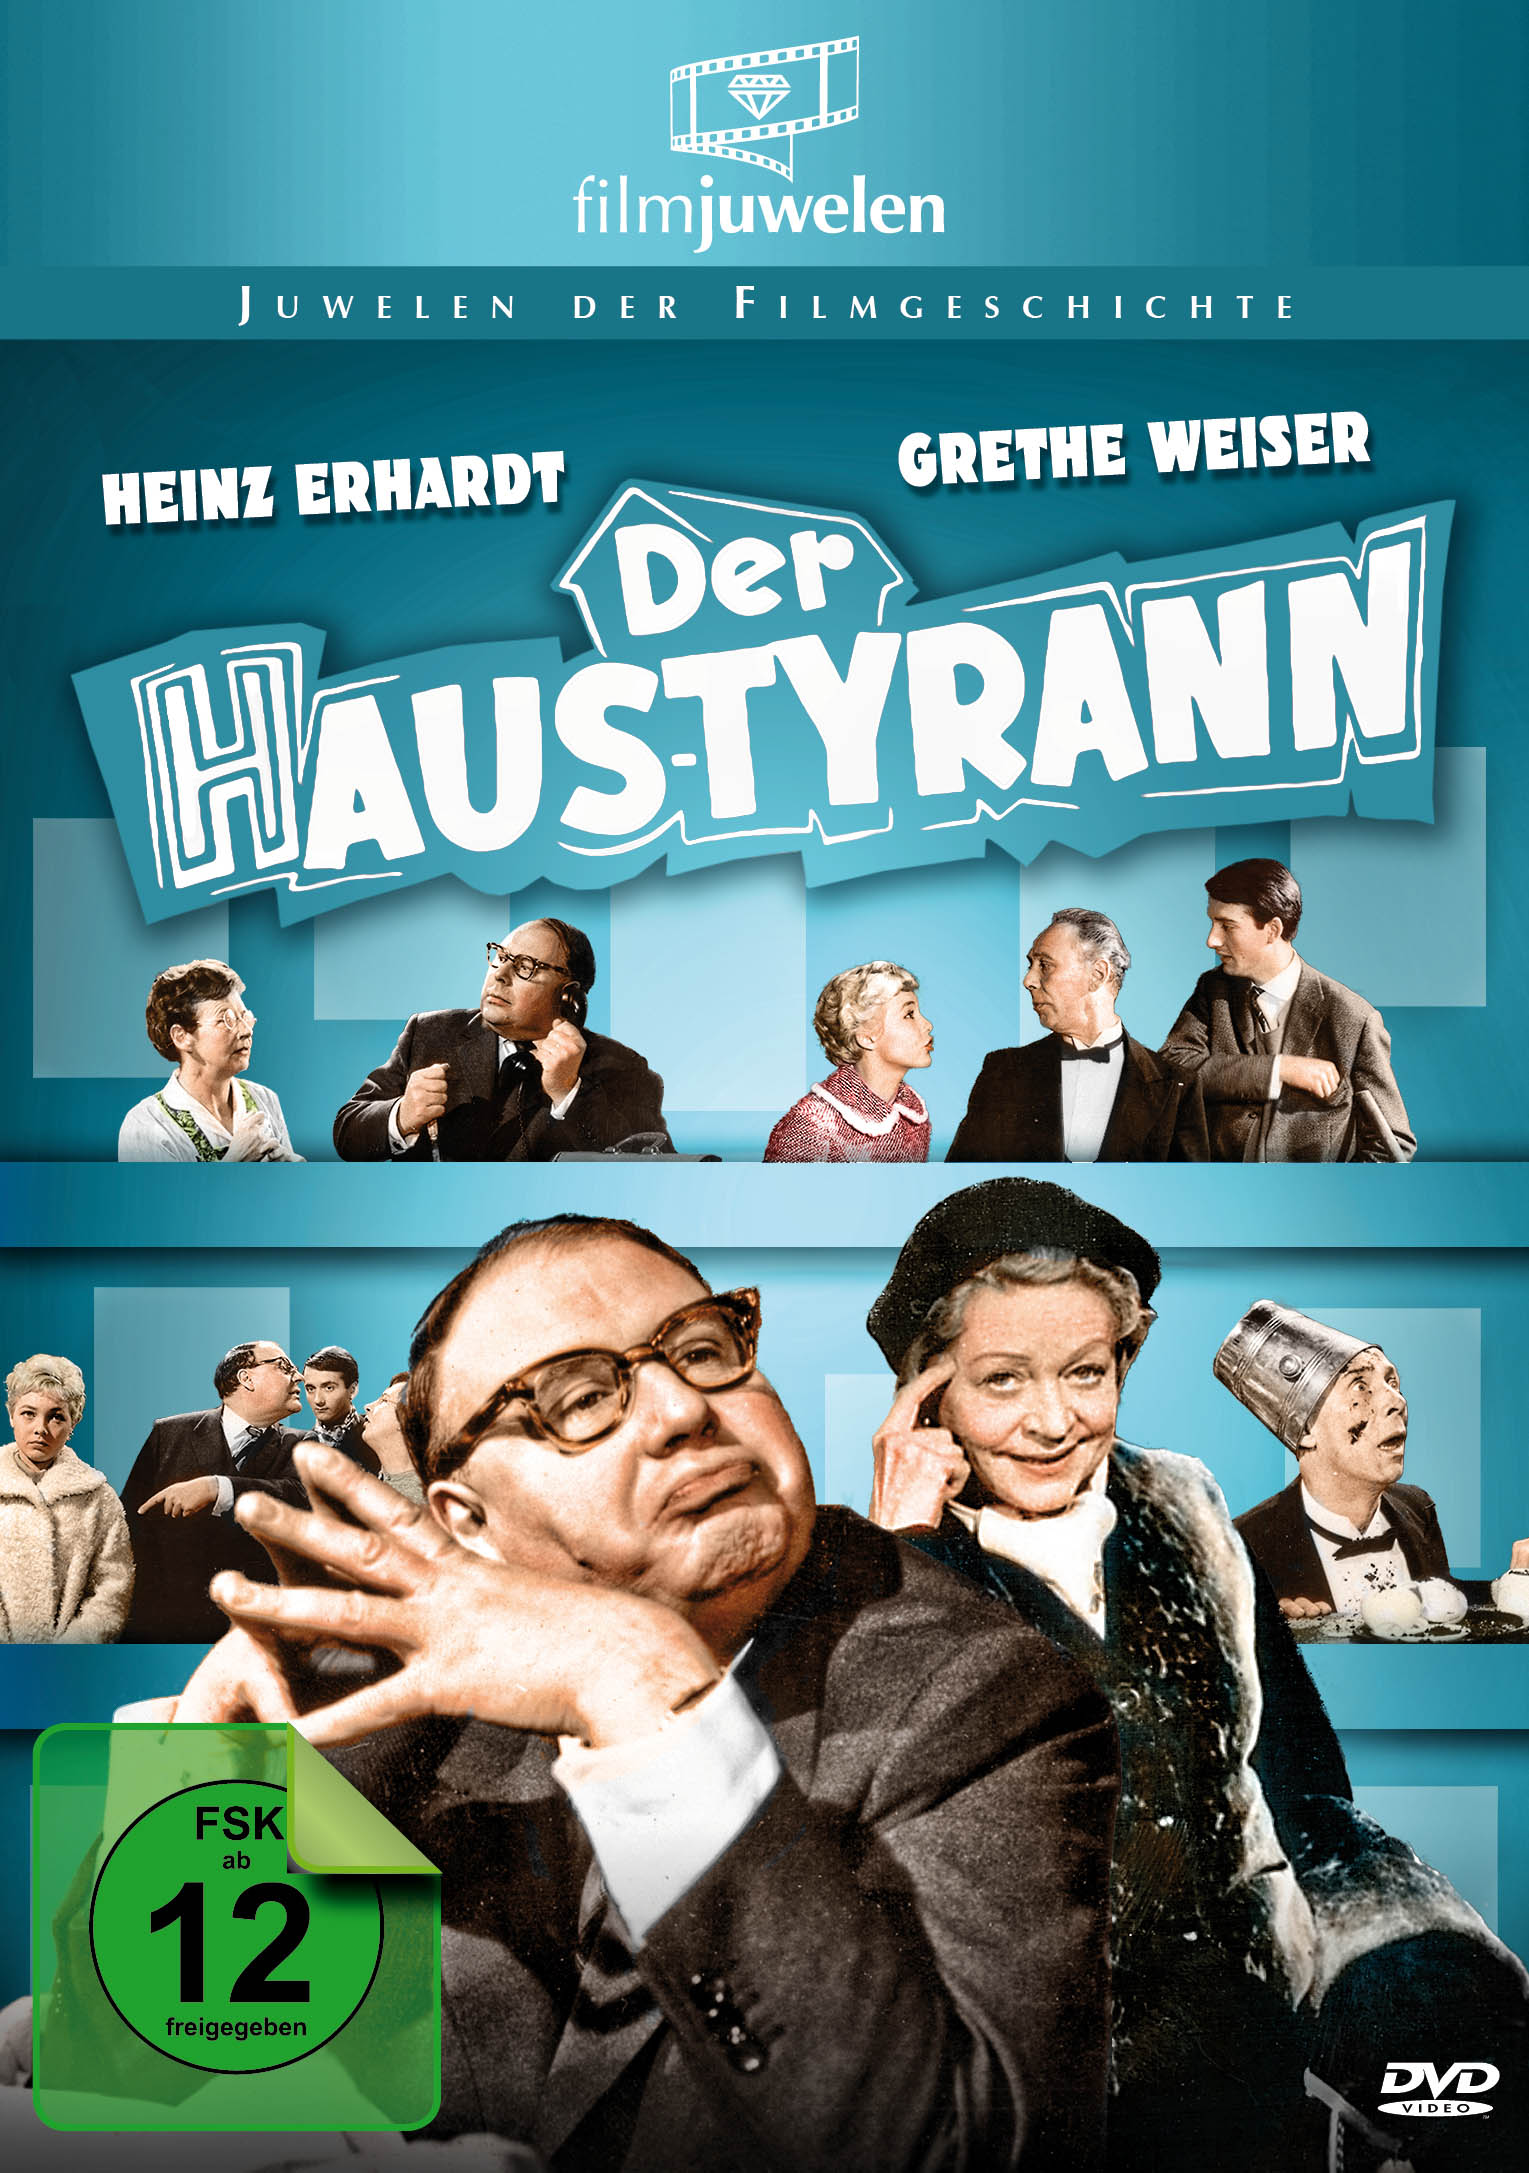 Heinz Erhardt - DVD Haustyrann Der